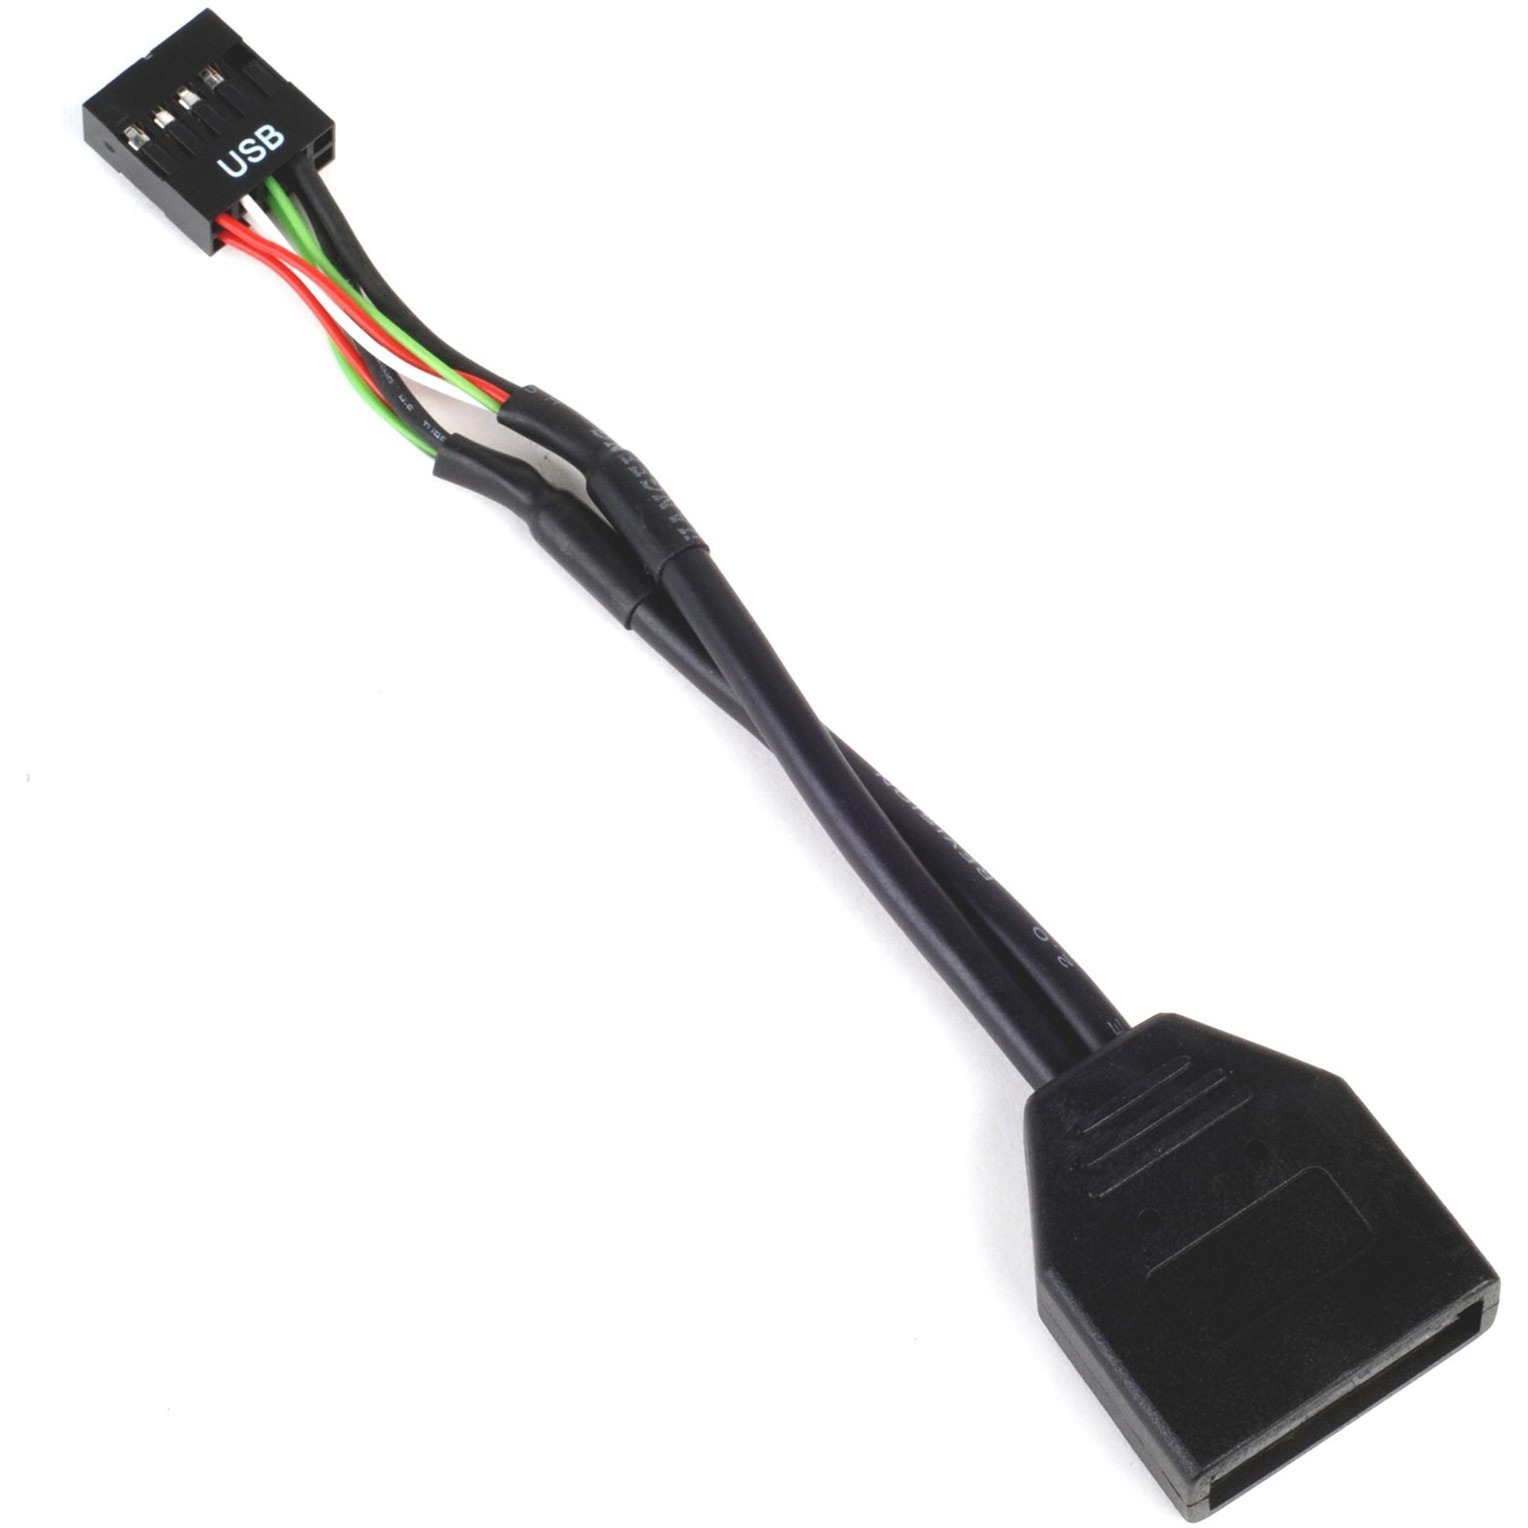 Image of Alternate - G11303050-RT, USB 2.0 9Pin (intern) > USB 3.0 19Pin (intern), Adapter online einkaufen bei Alternate